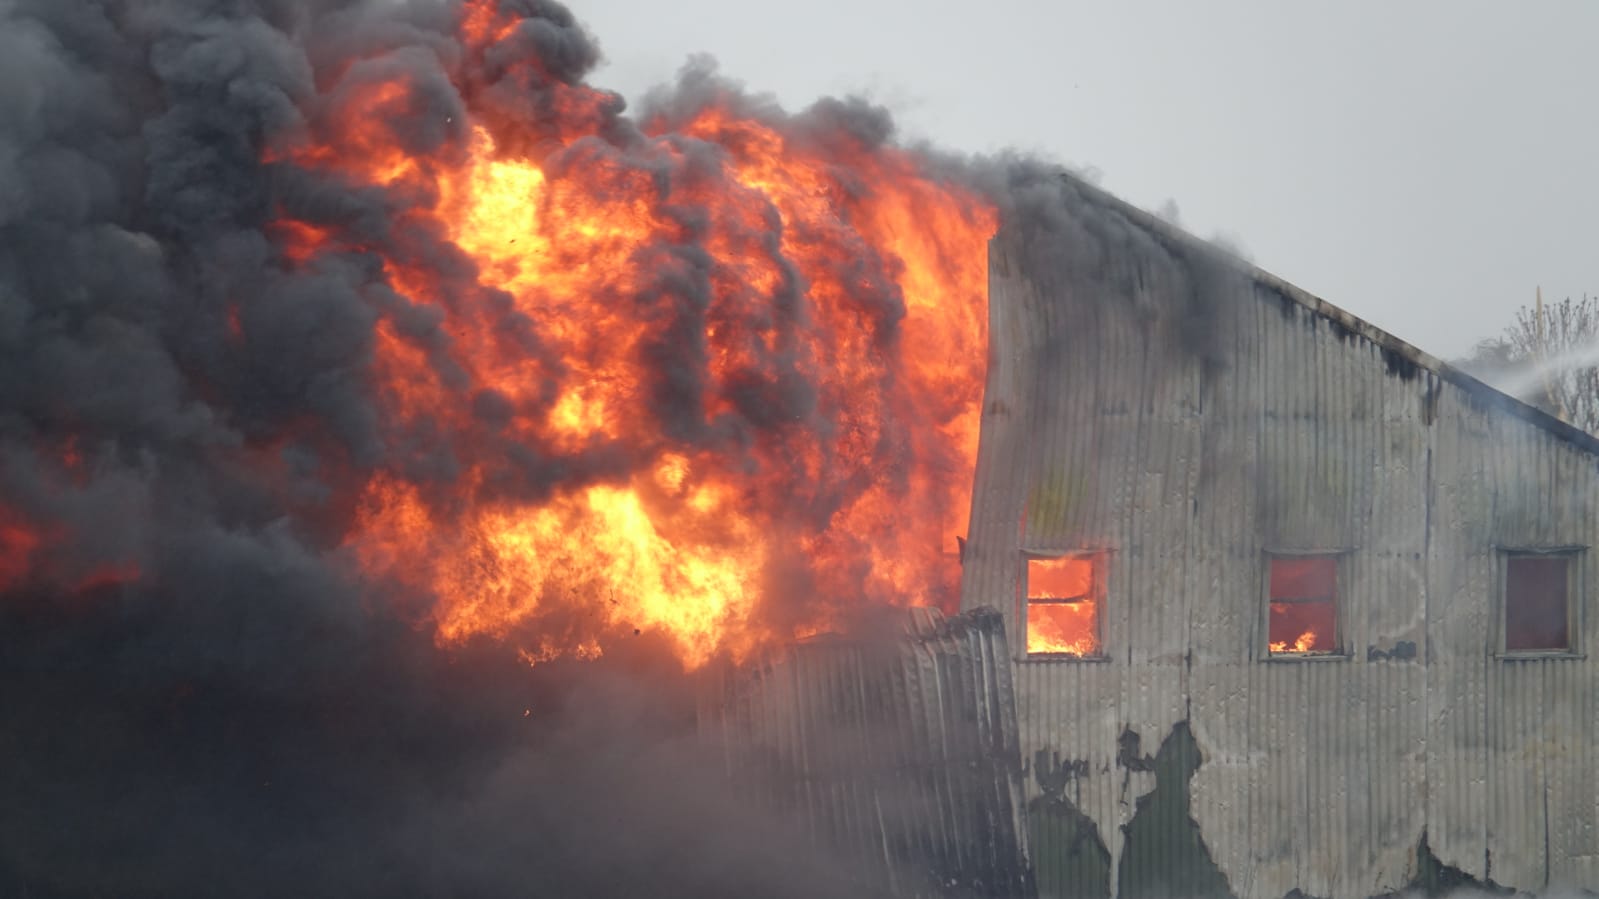 Grote rookwolken bij uitslaande brand in schuur Tuitjenhorn: “Sluit ramen en deuren”